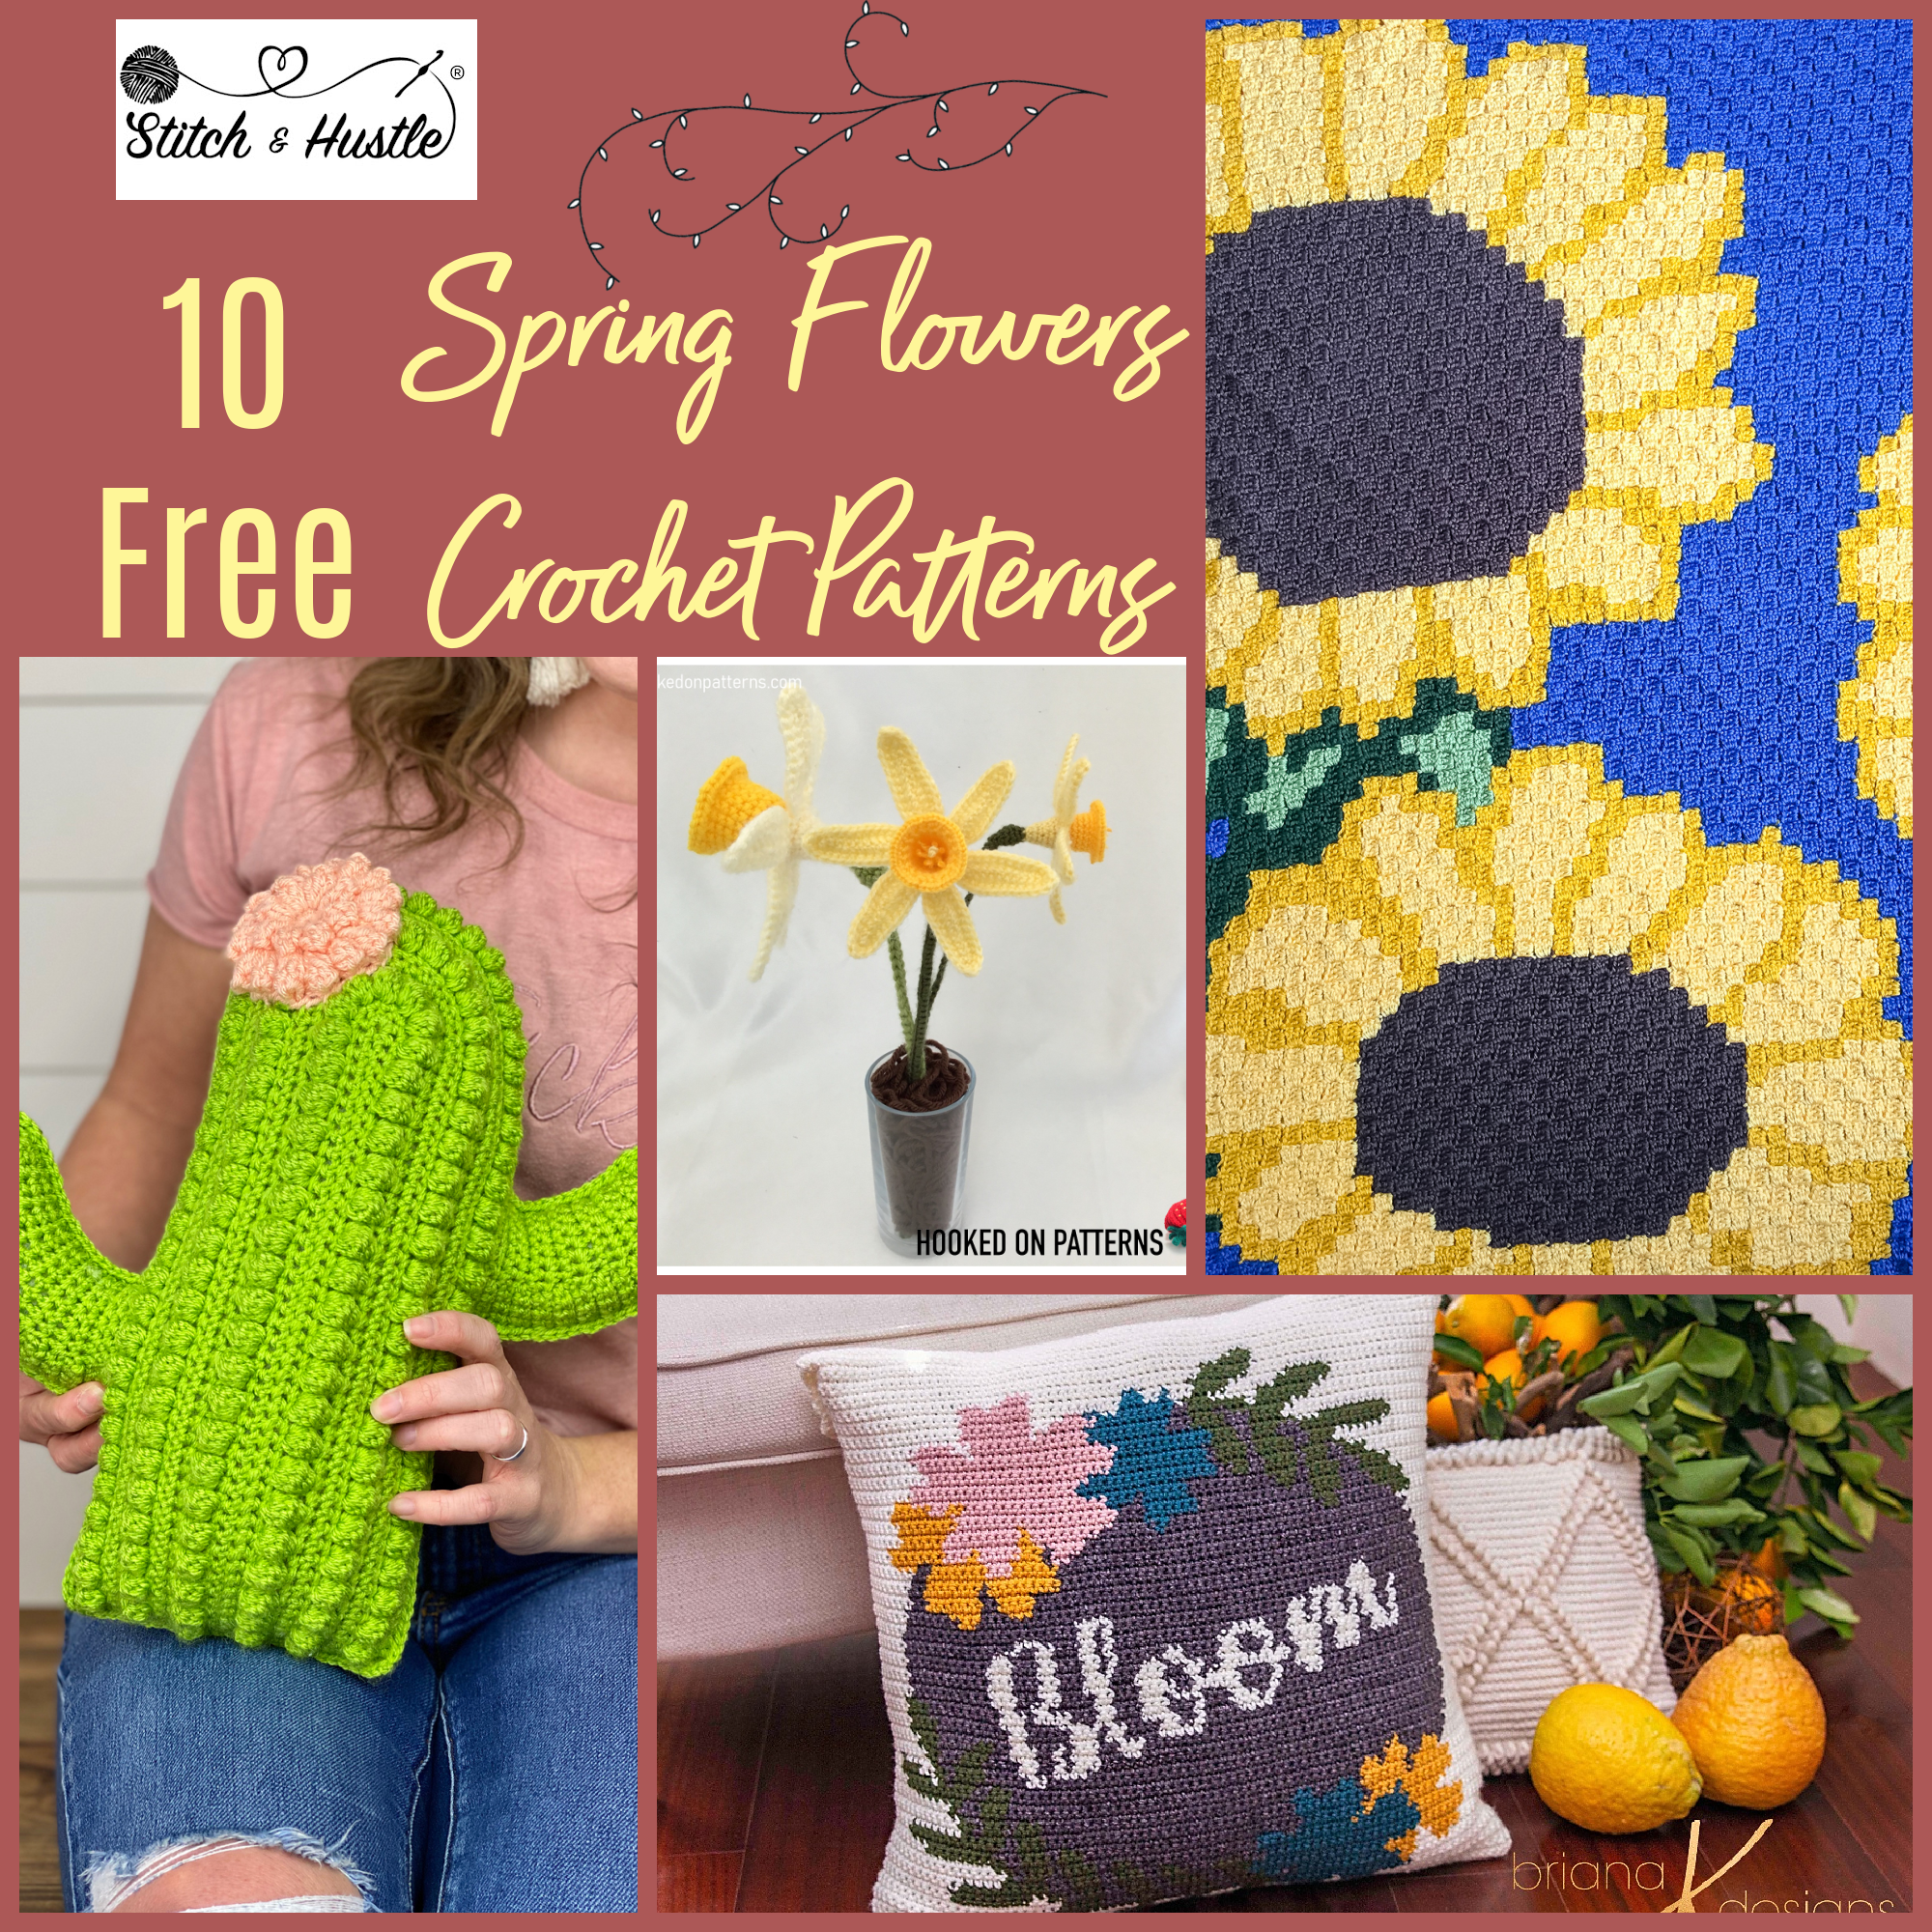 Embellish A Bloom Crochet Flower Kit